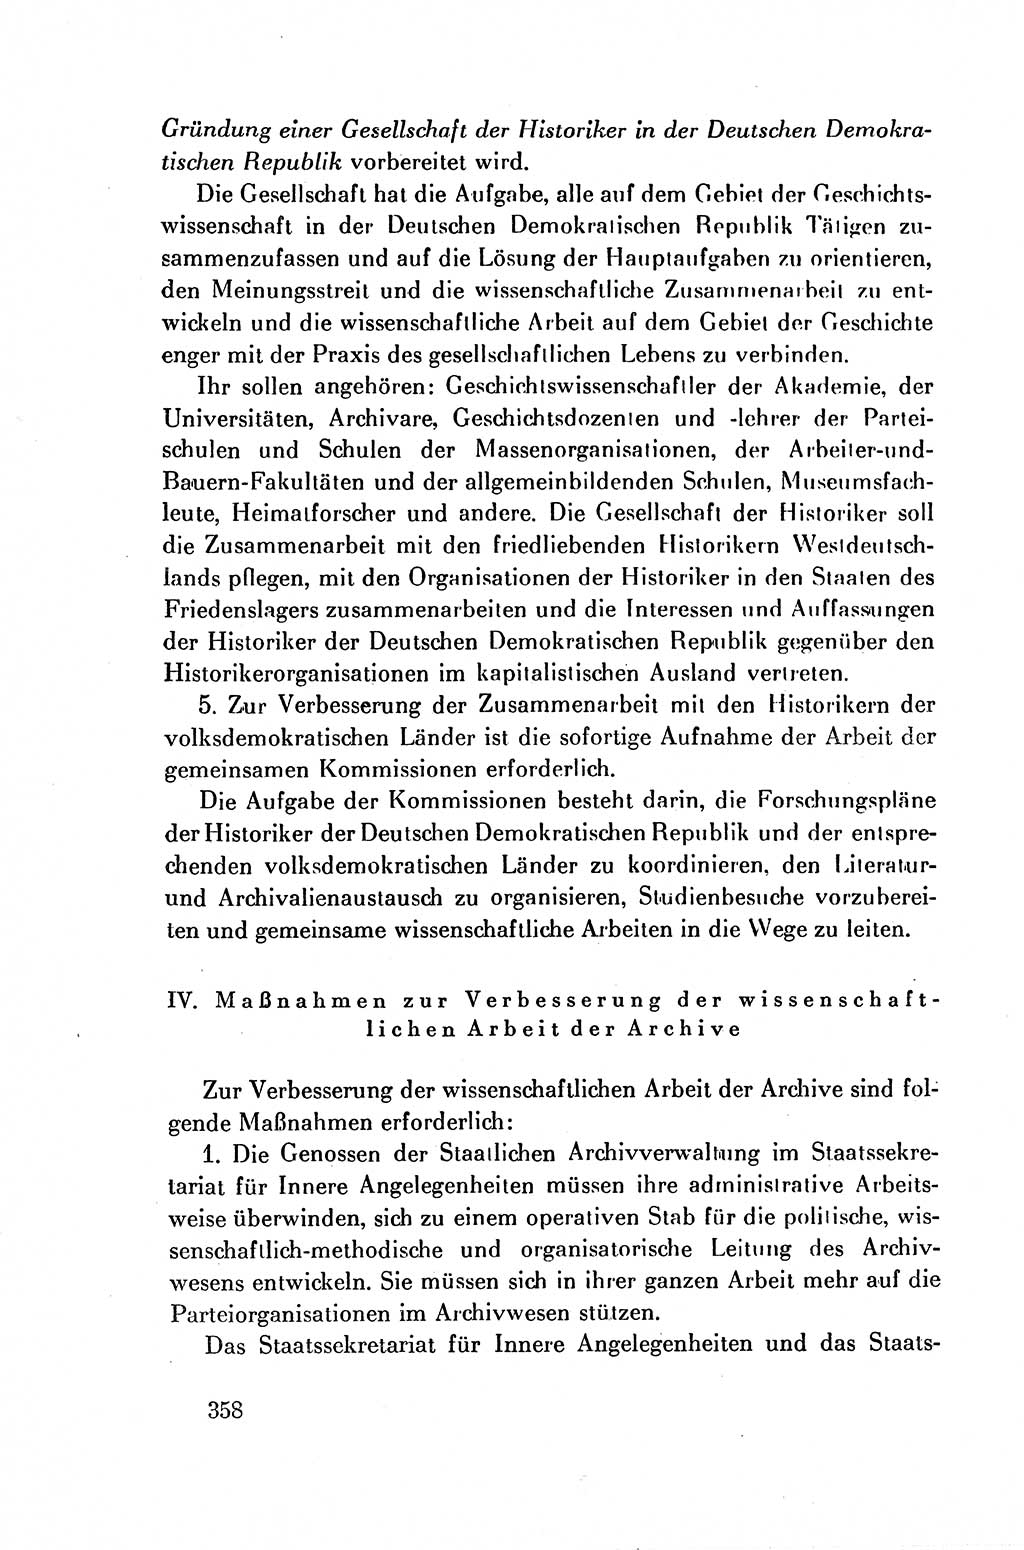 Dokumente der Sozialistischen Einheitspartei Deutschlands (SED) [Deutsche Demokratische Republik (DDR)] 1954-1955, Seite 358 (Dok. SED DDR 1954-1955, S. 358)